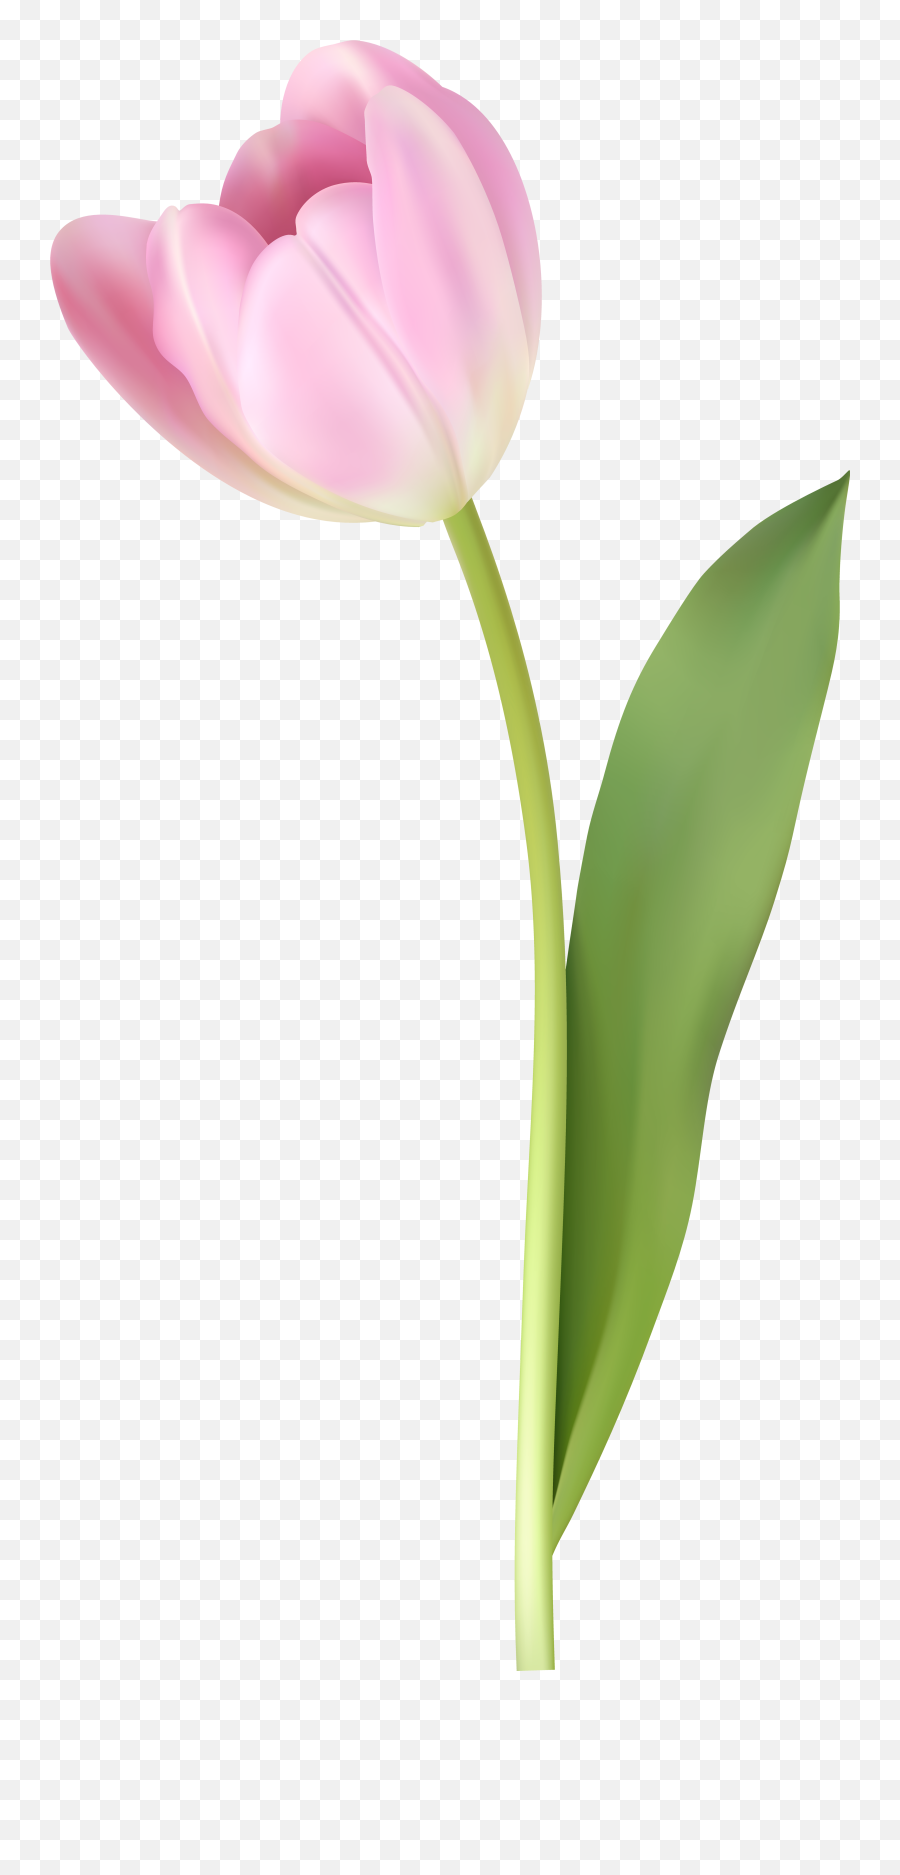 Pink Tulip Transparent Image - Pink Tulip Png,Tulip Png